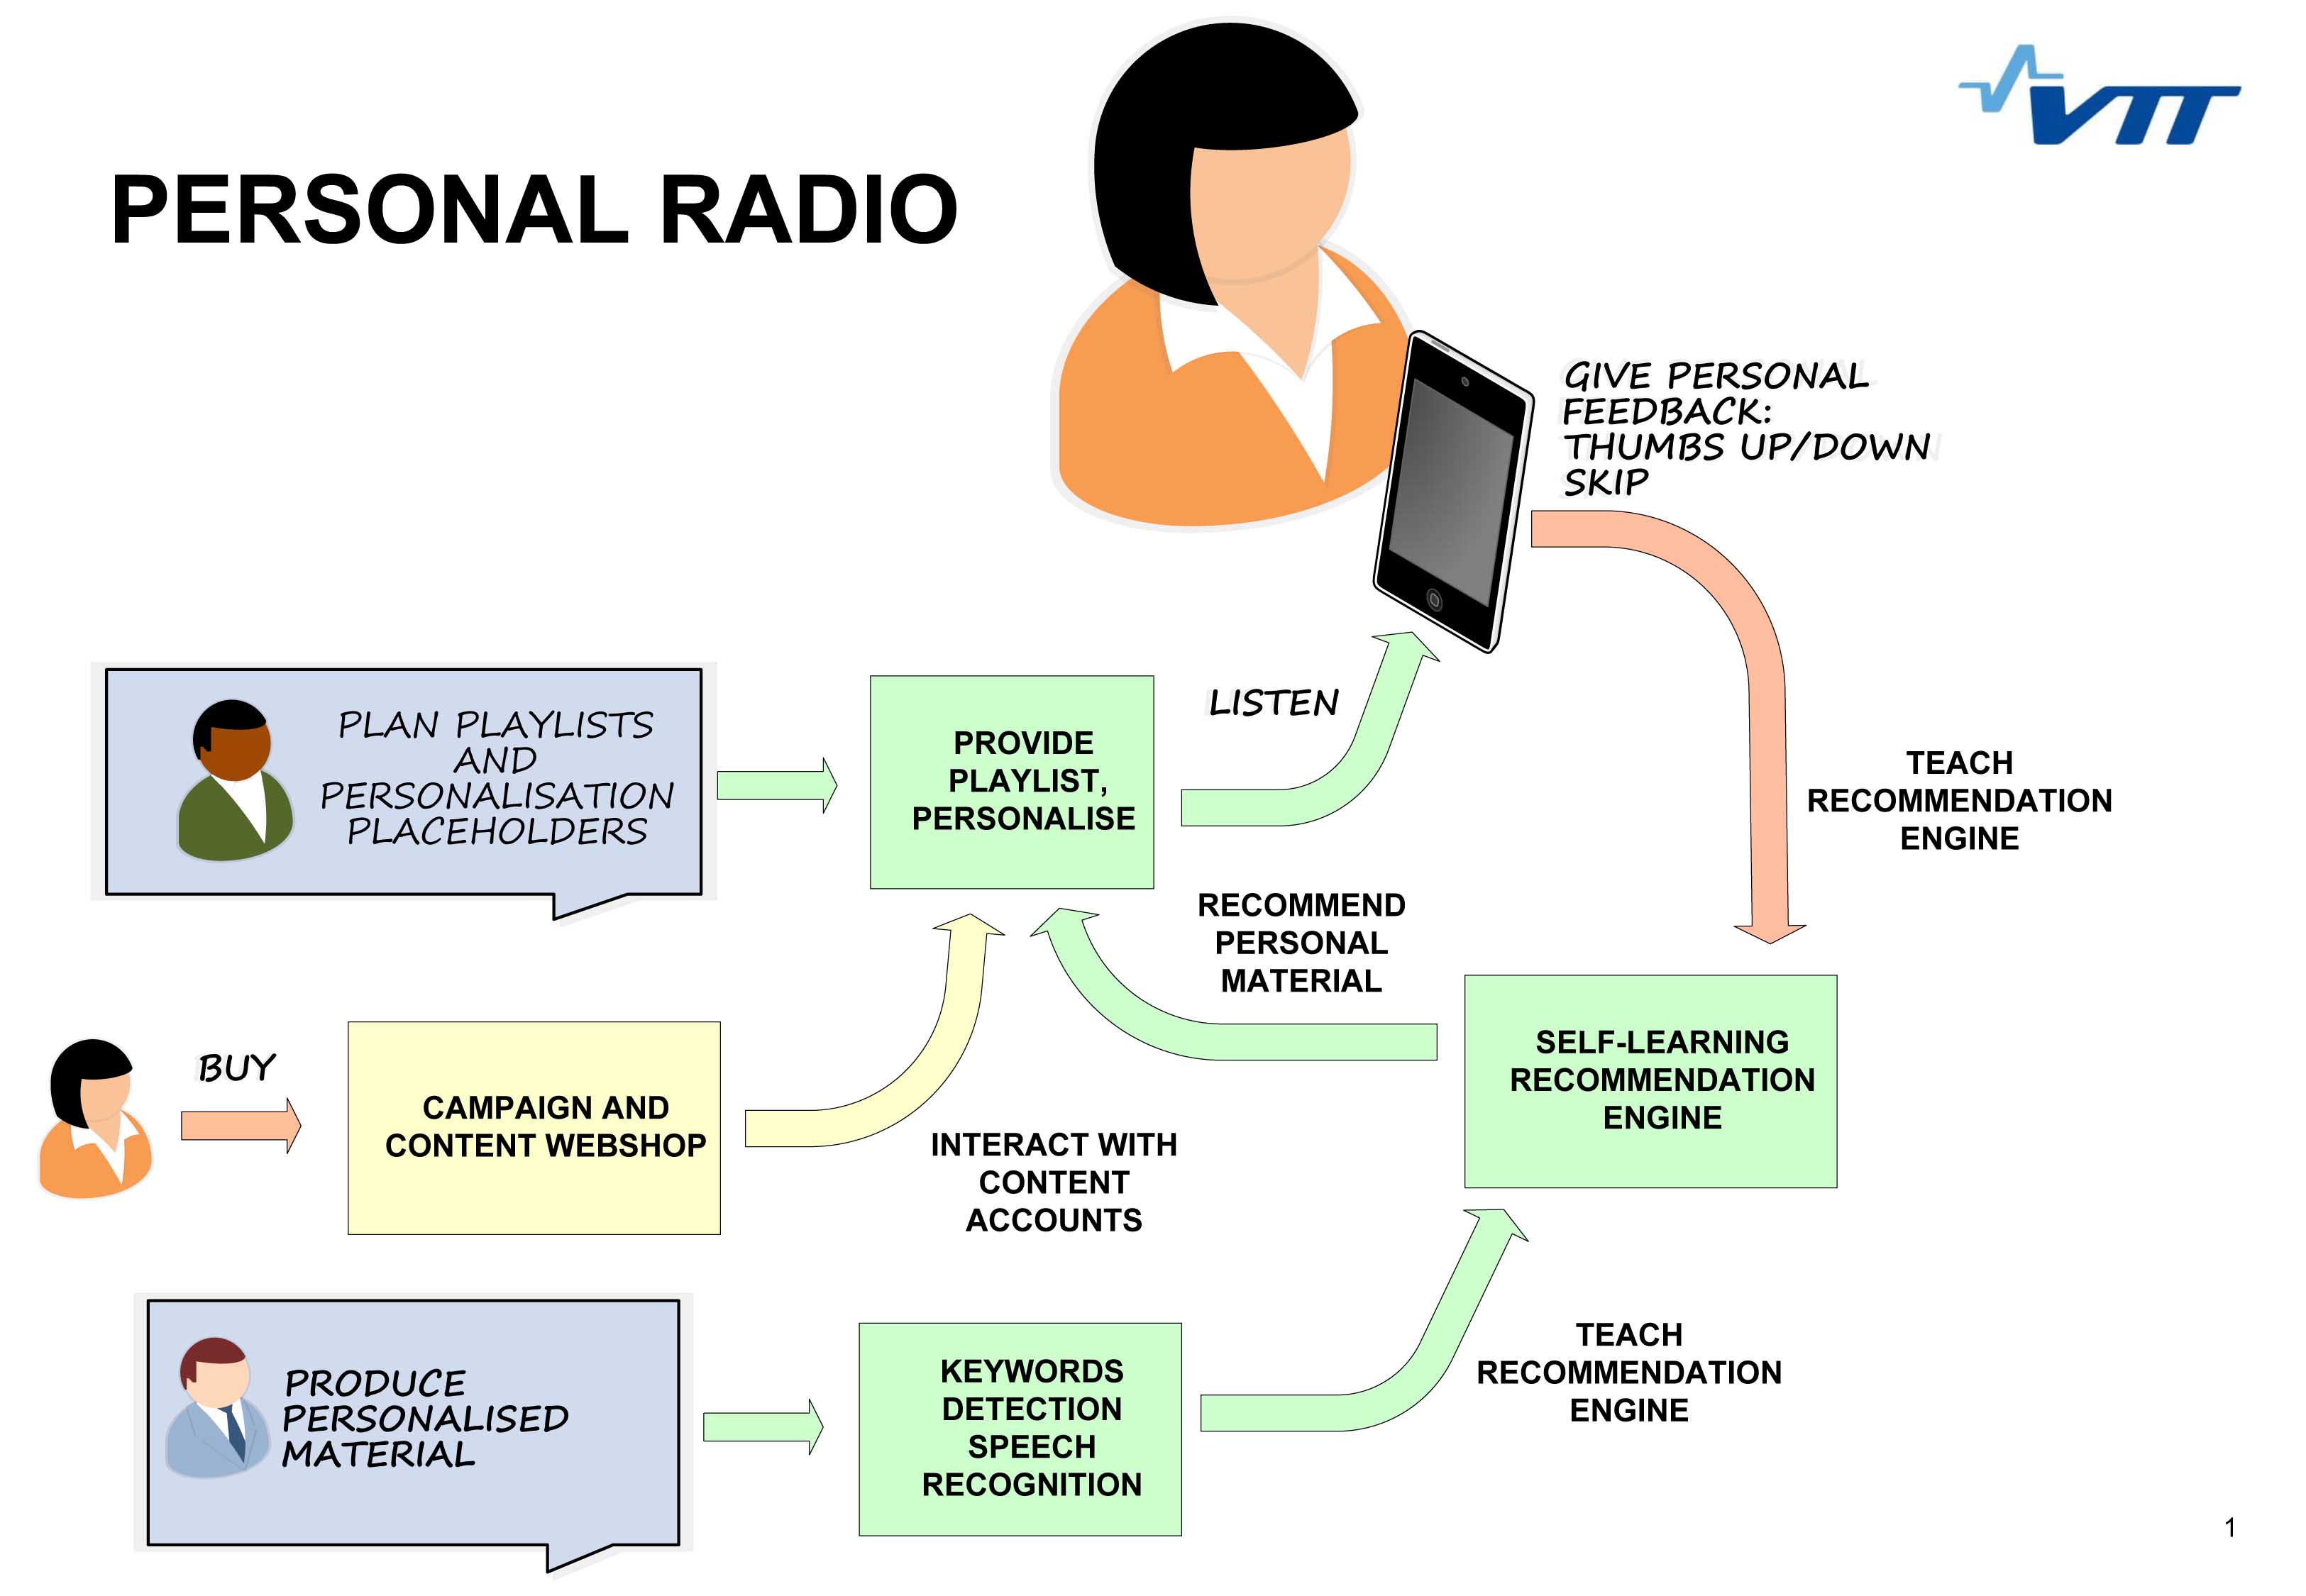 Esquema del concepto de Personal Radio. Fuente: VTT